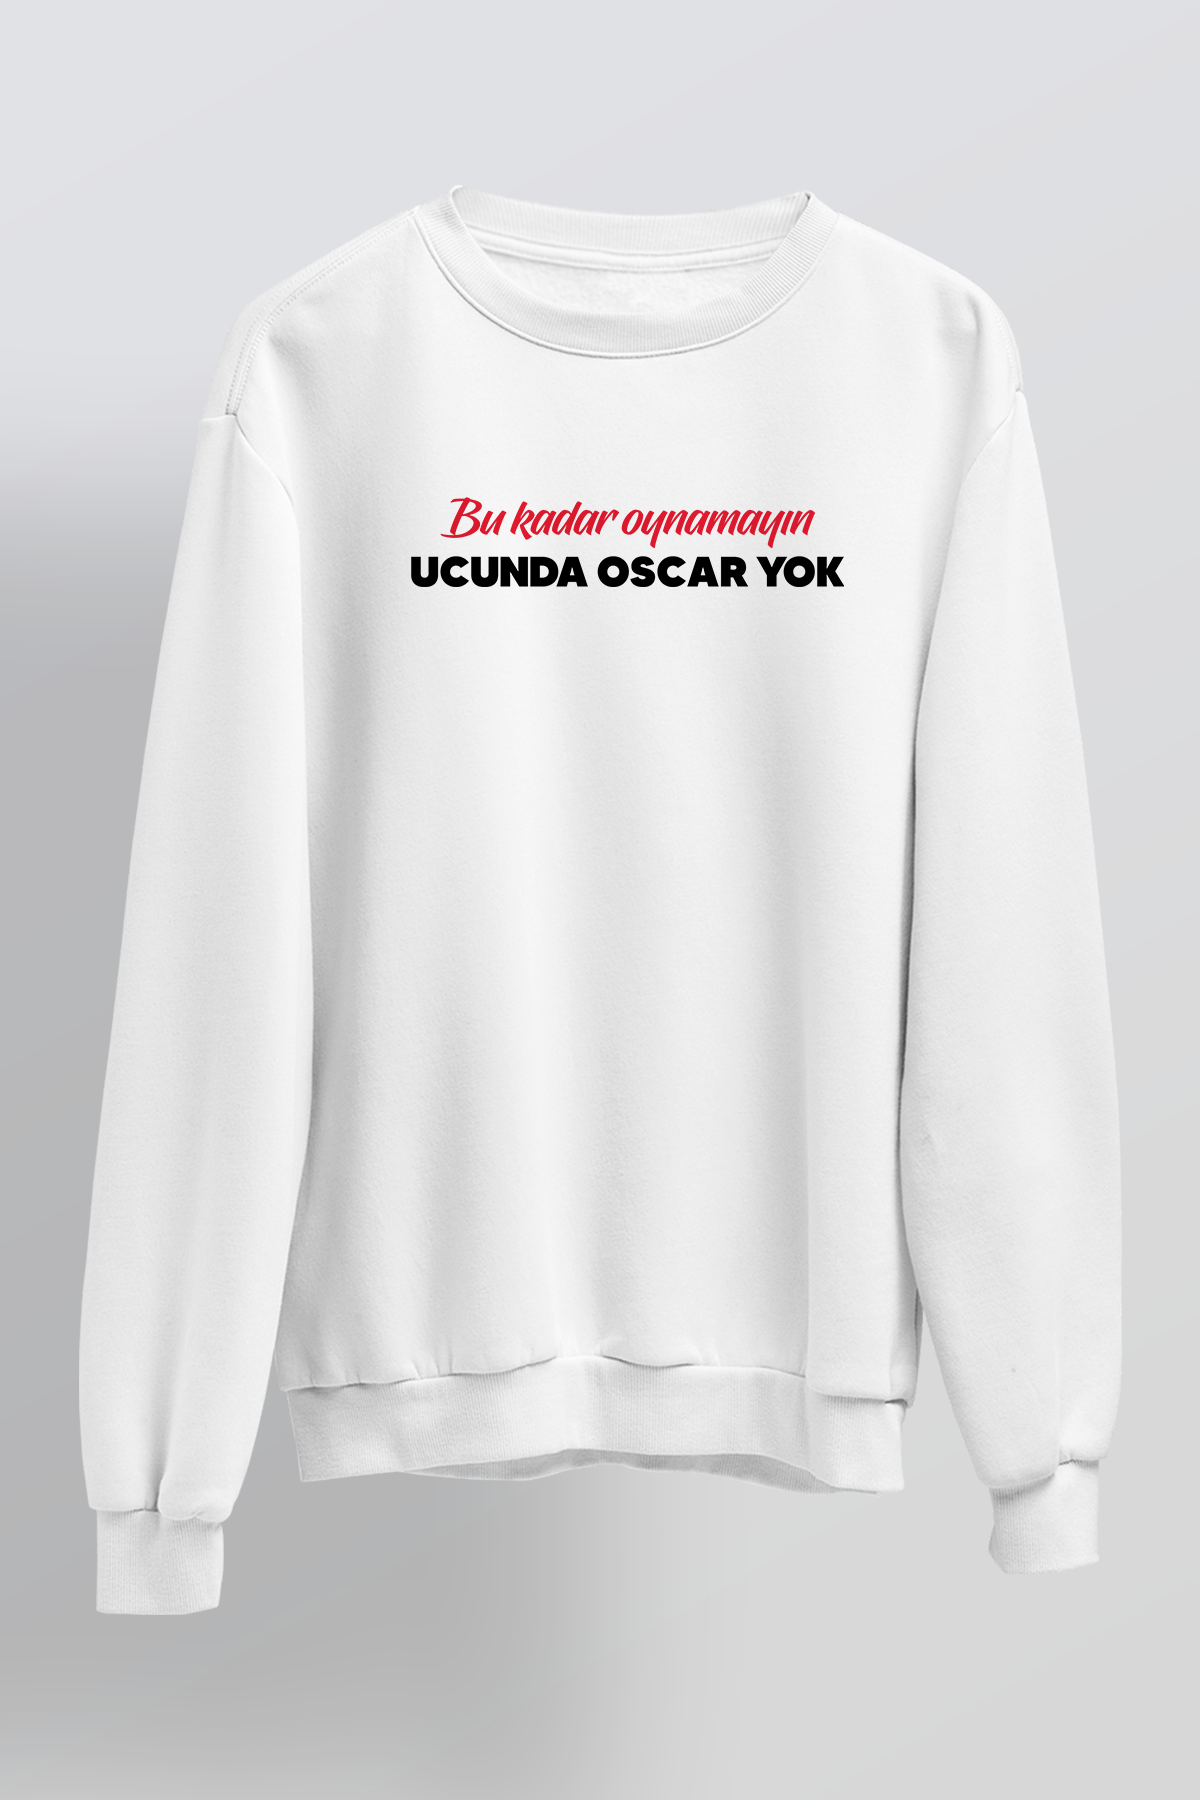 Ucunda Oscar Yok - Sweatshirt